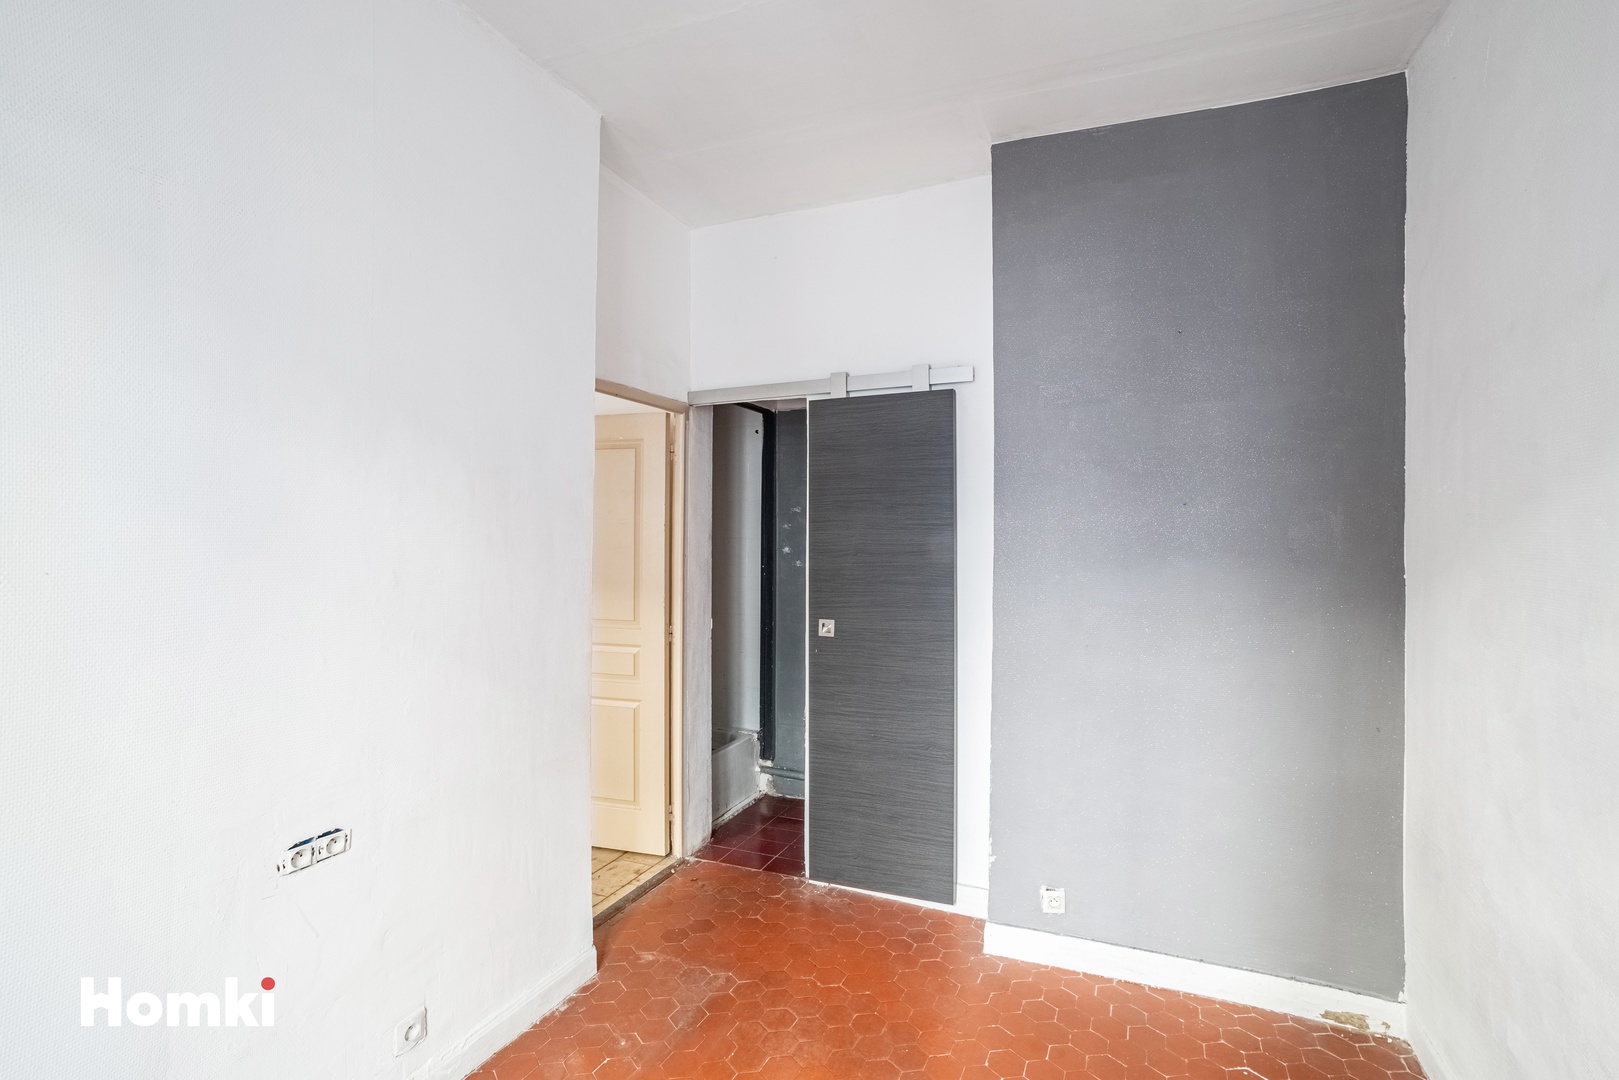 Homki - Vente Appartement  de 31.0 m² à Nice 06300